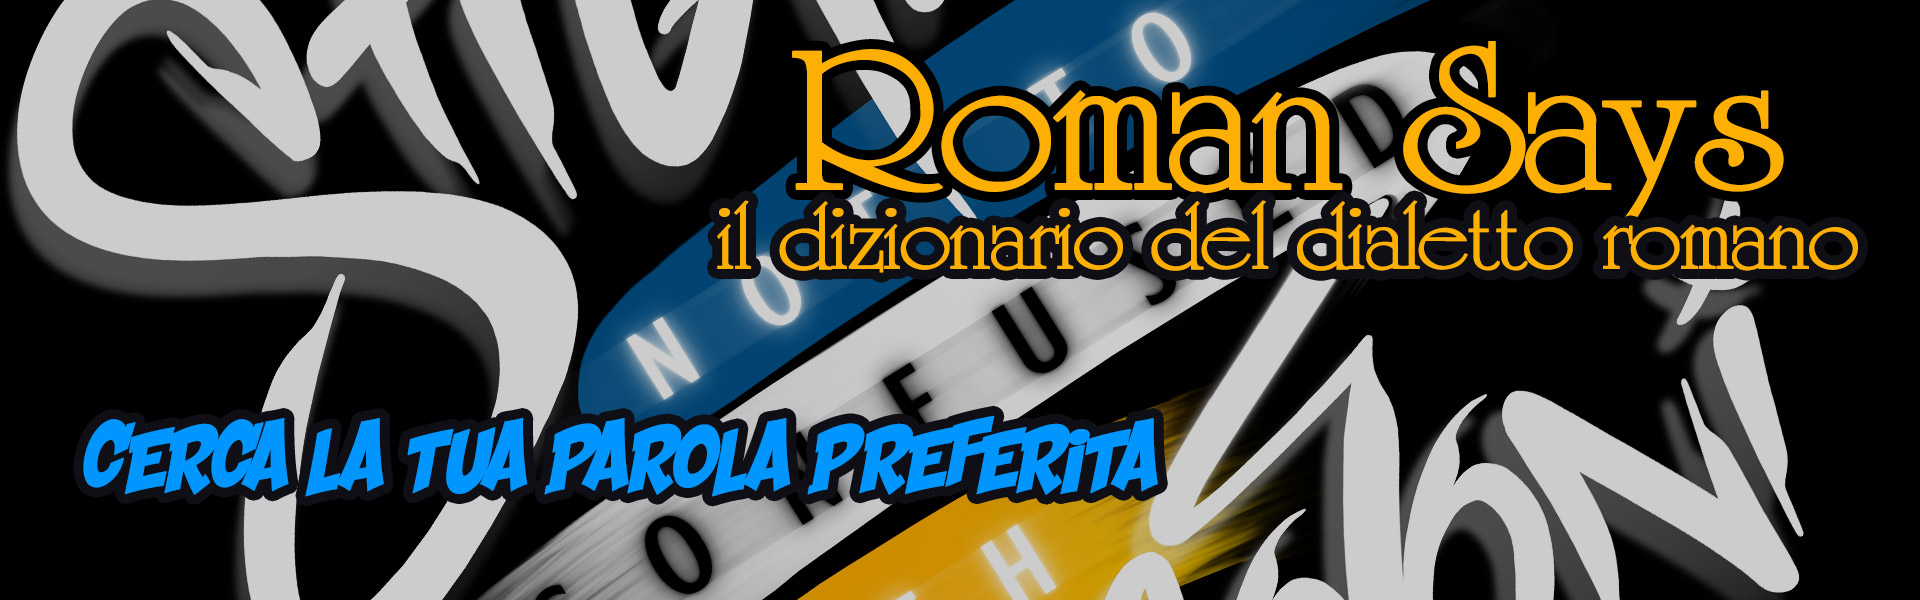 Banner-Dialetto-Romano-1